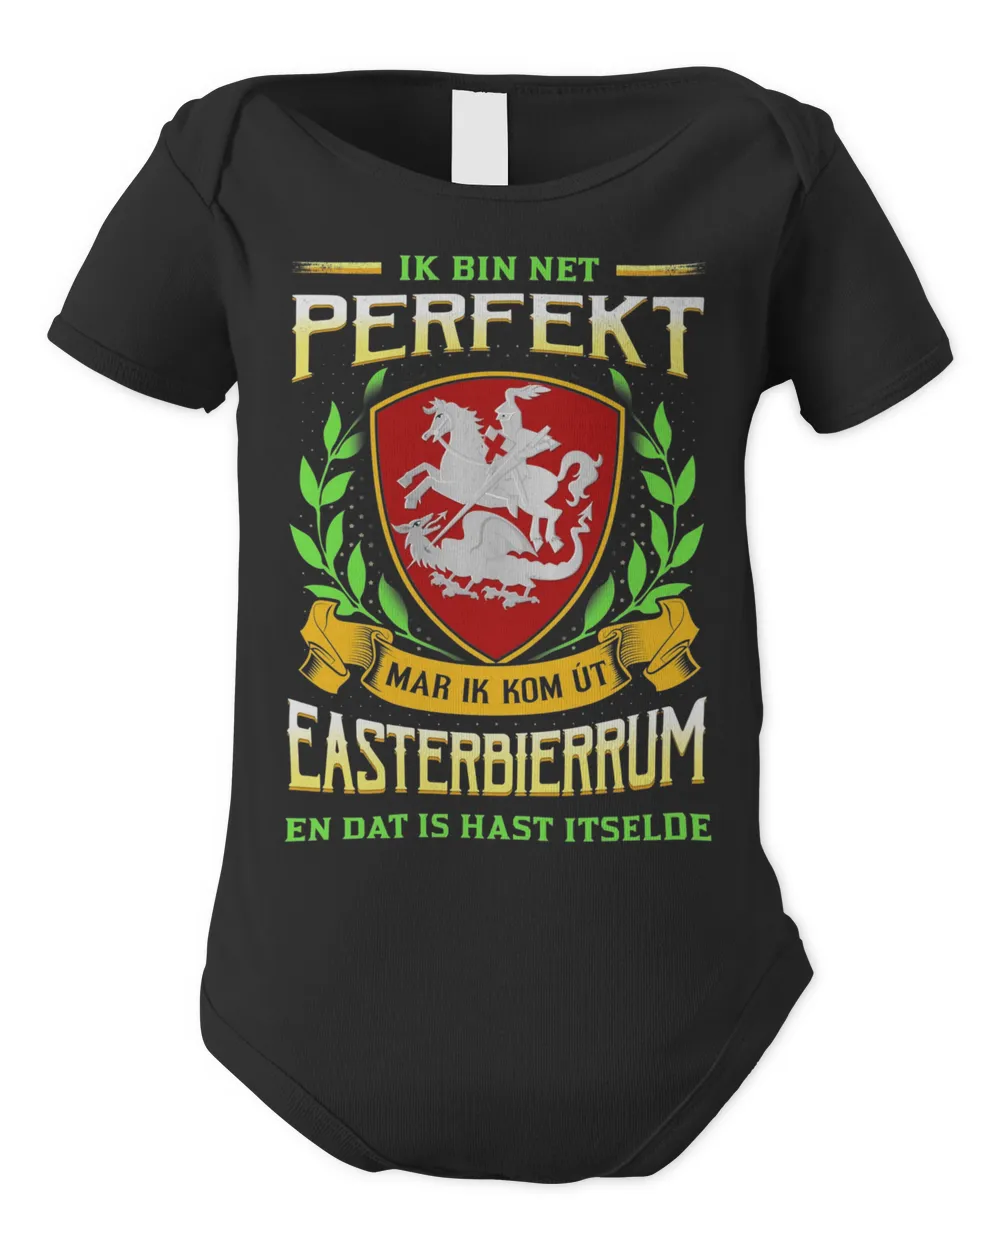 Ik Bin Net Perfekt Mar Ik Kom Út Easterbierrum En Dat Is Hast Itselde Shirt